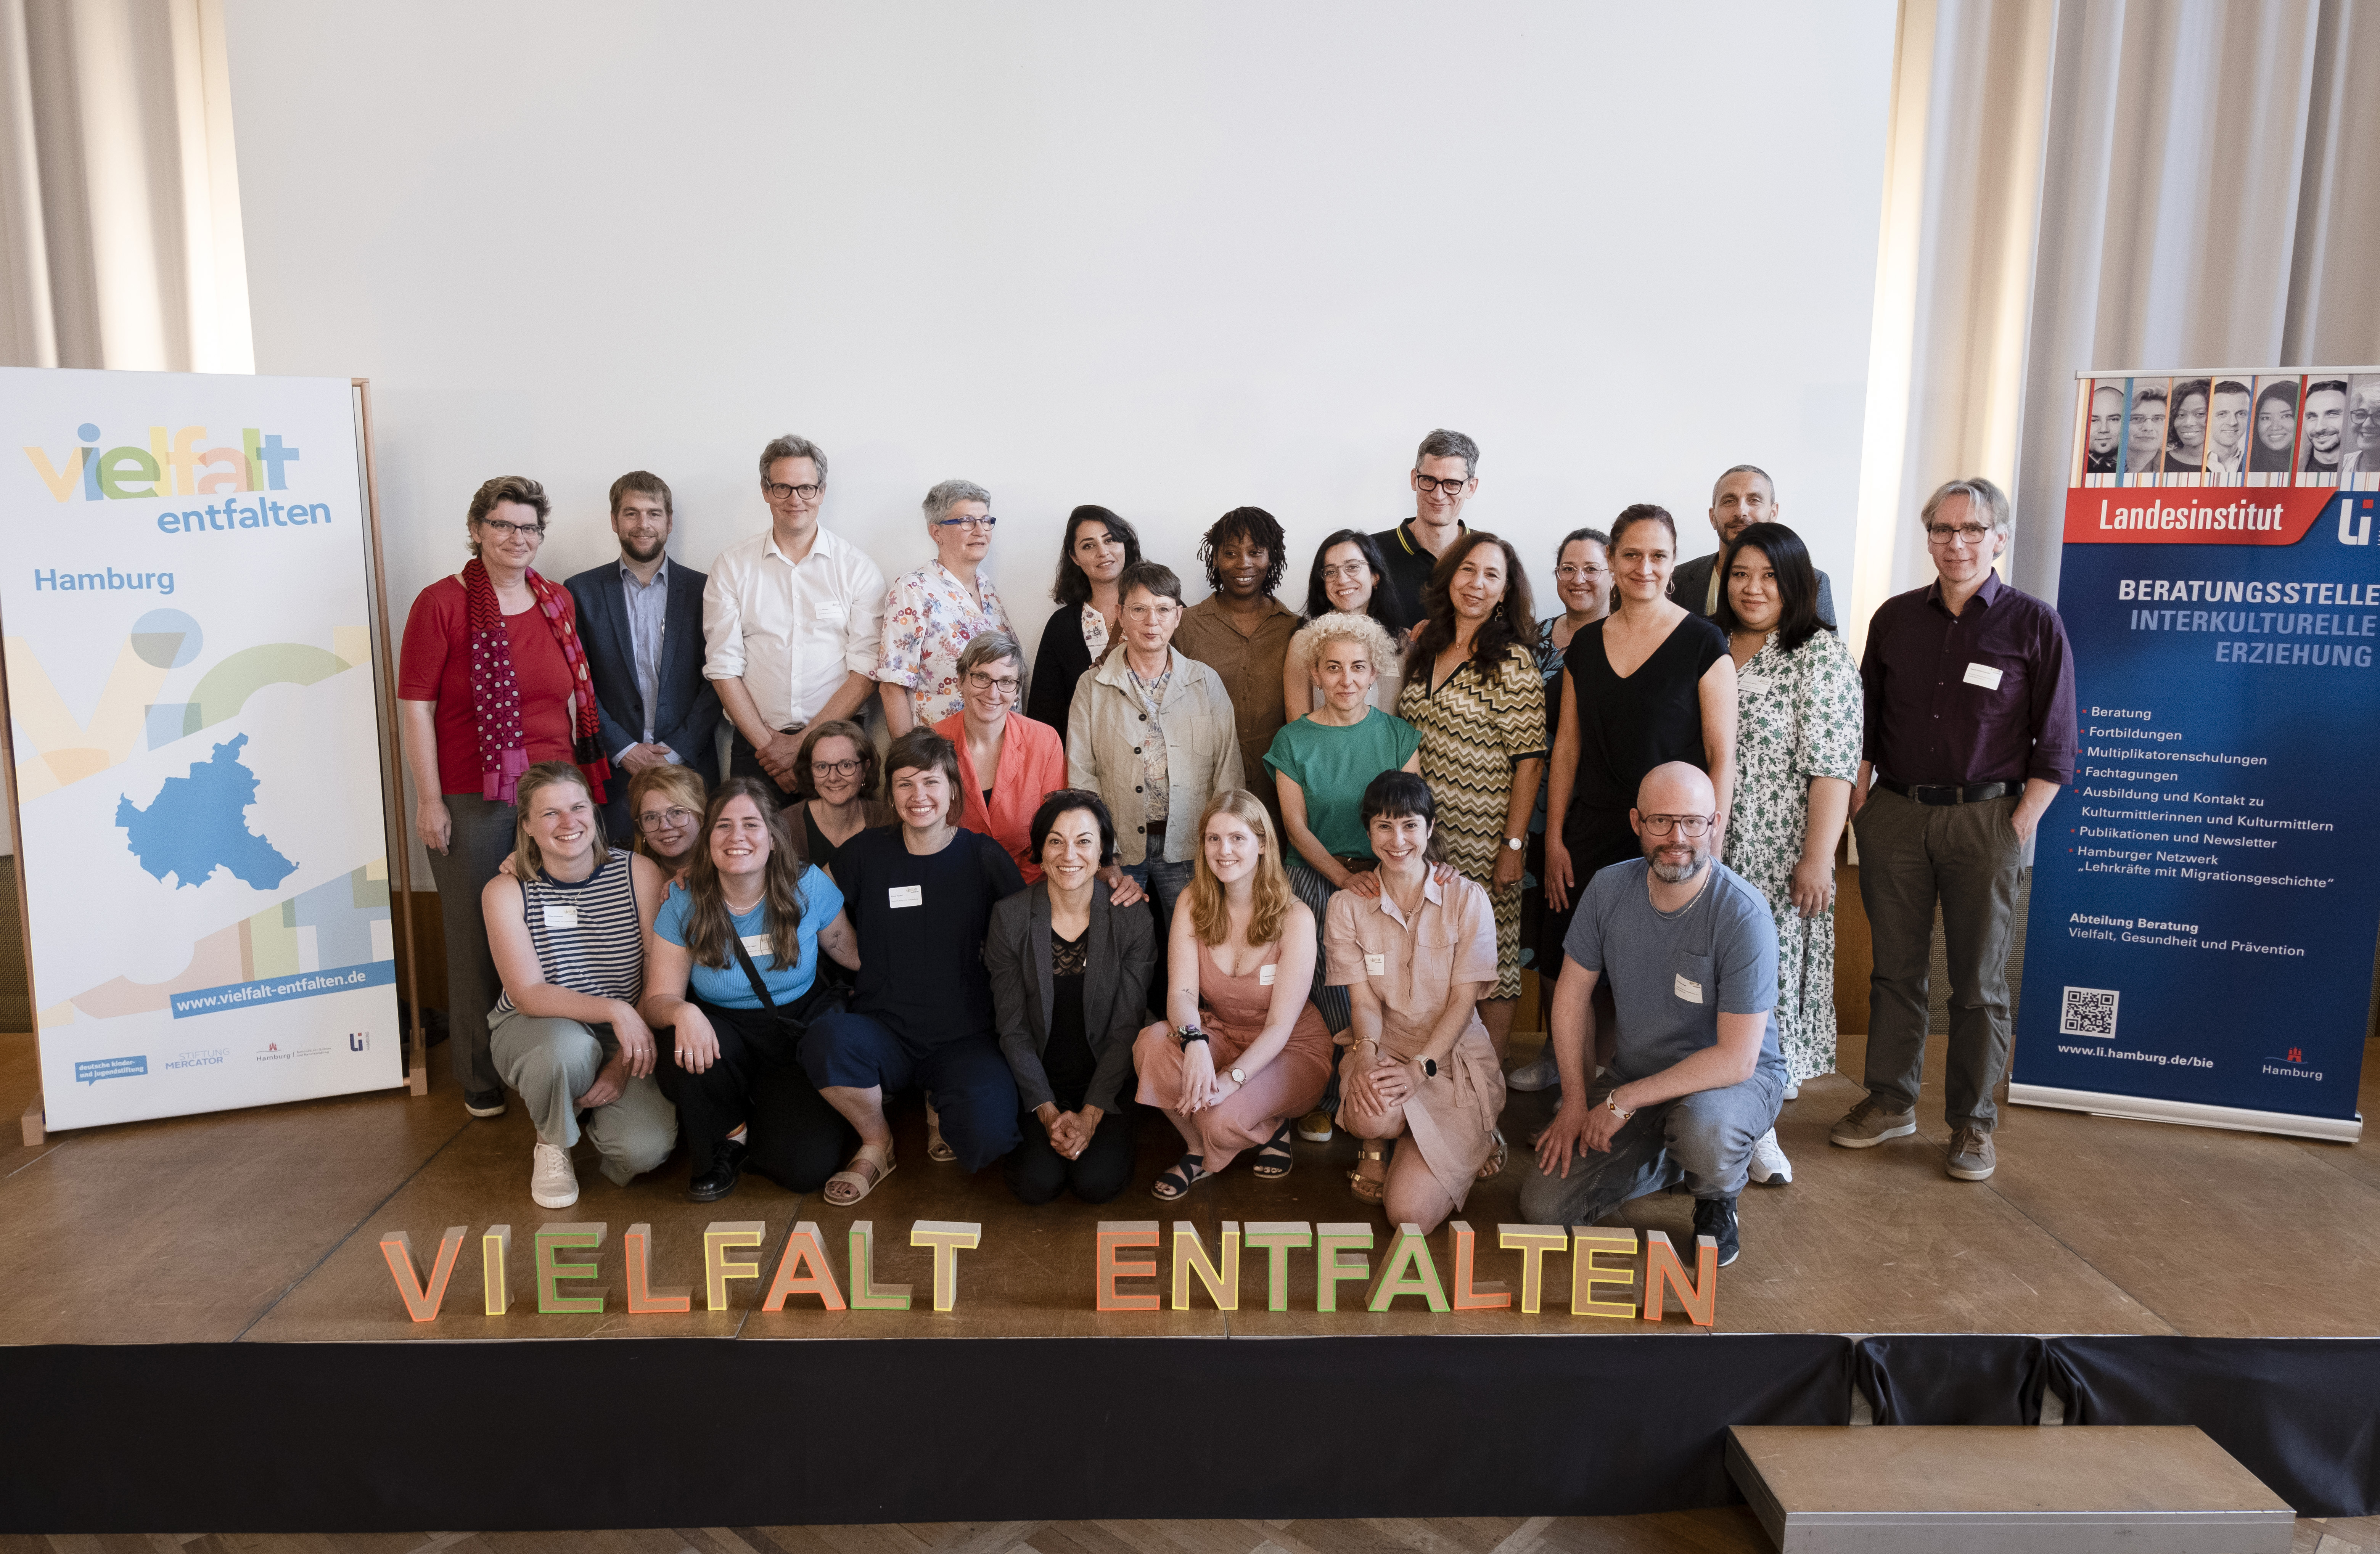 Team Hamburg "Vielfalt entfalten"